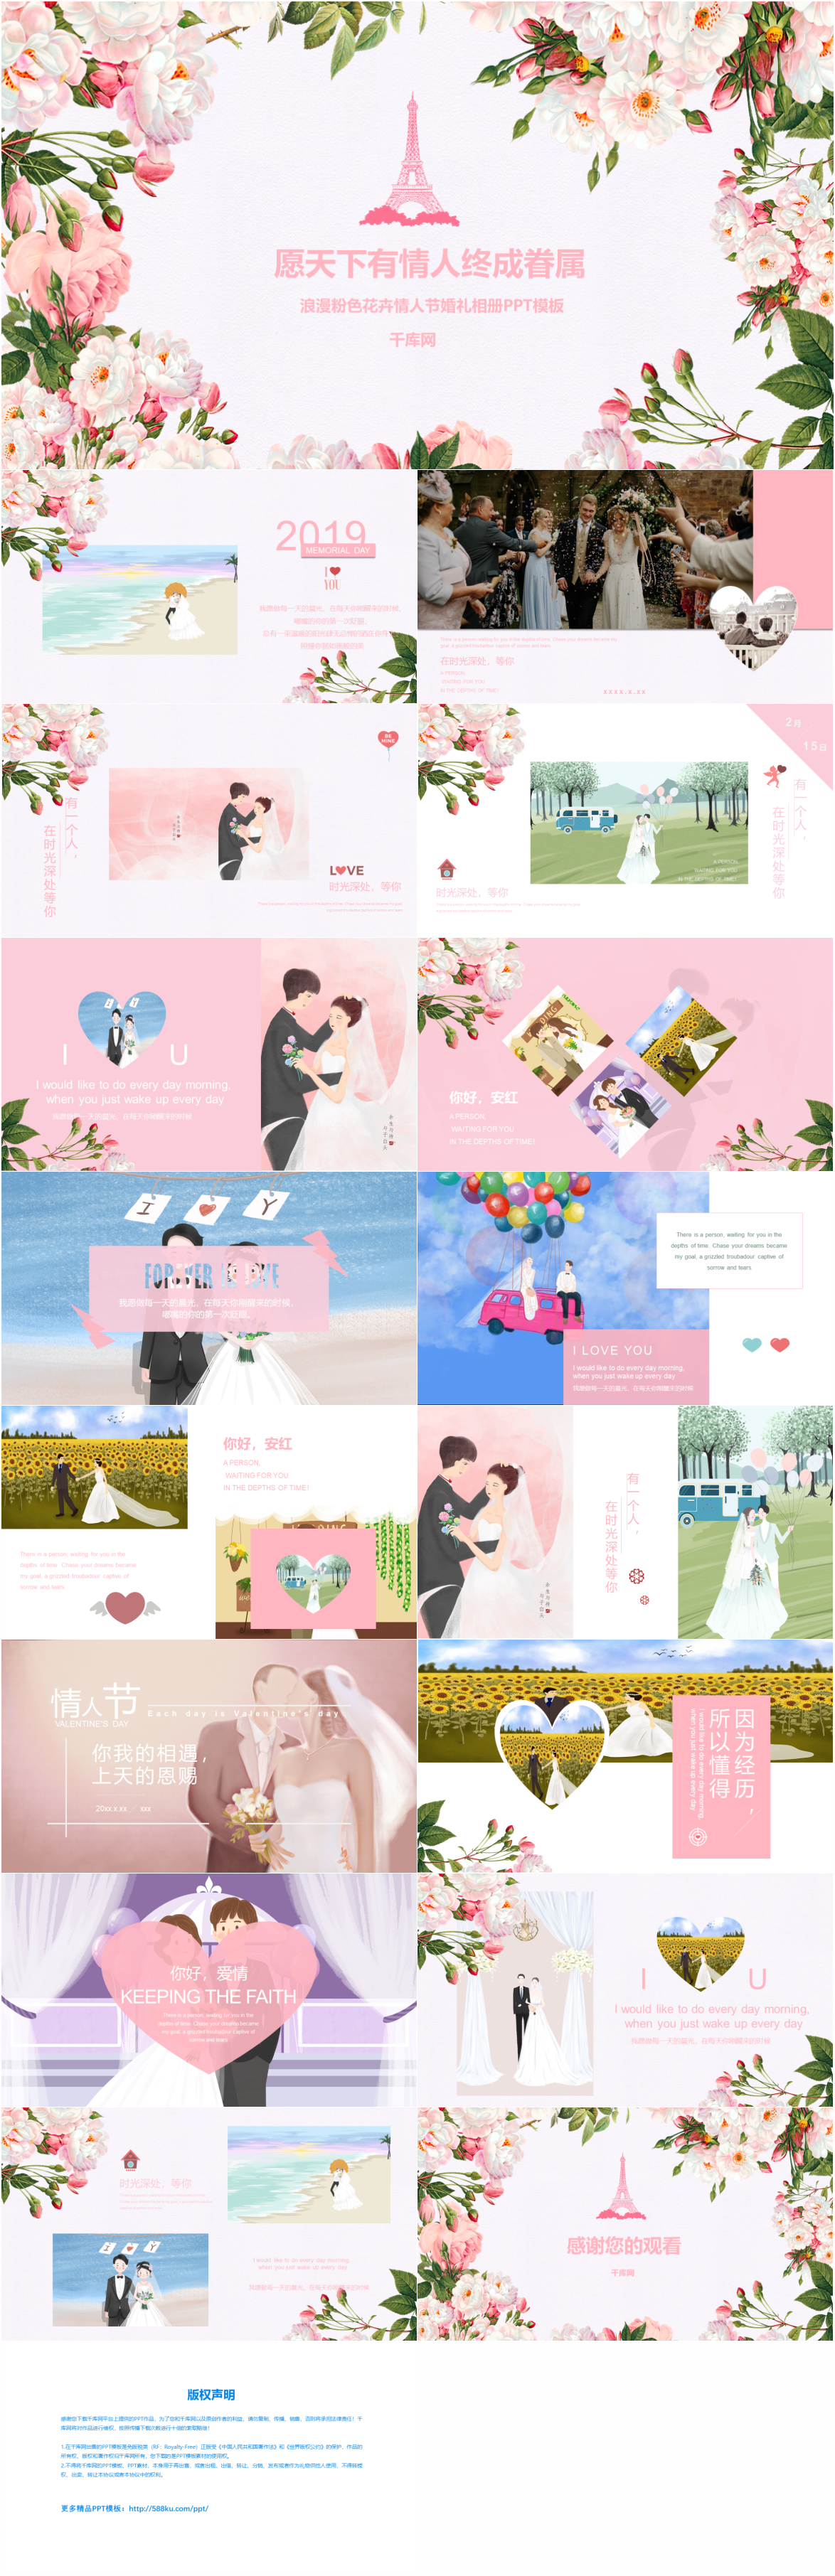 ロマンチックなピンクの花のバレンタインデーのウェディングアルバムpptテンプレートイメージ パワーポイント Id 650082539 Prf画像フォーマットpptx Jp Lovepik Com